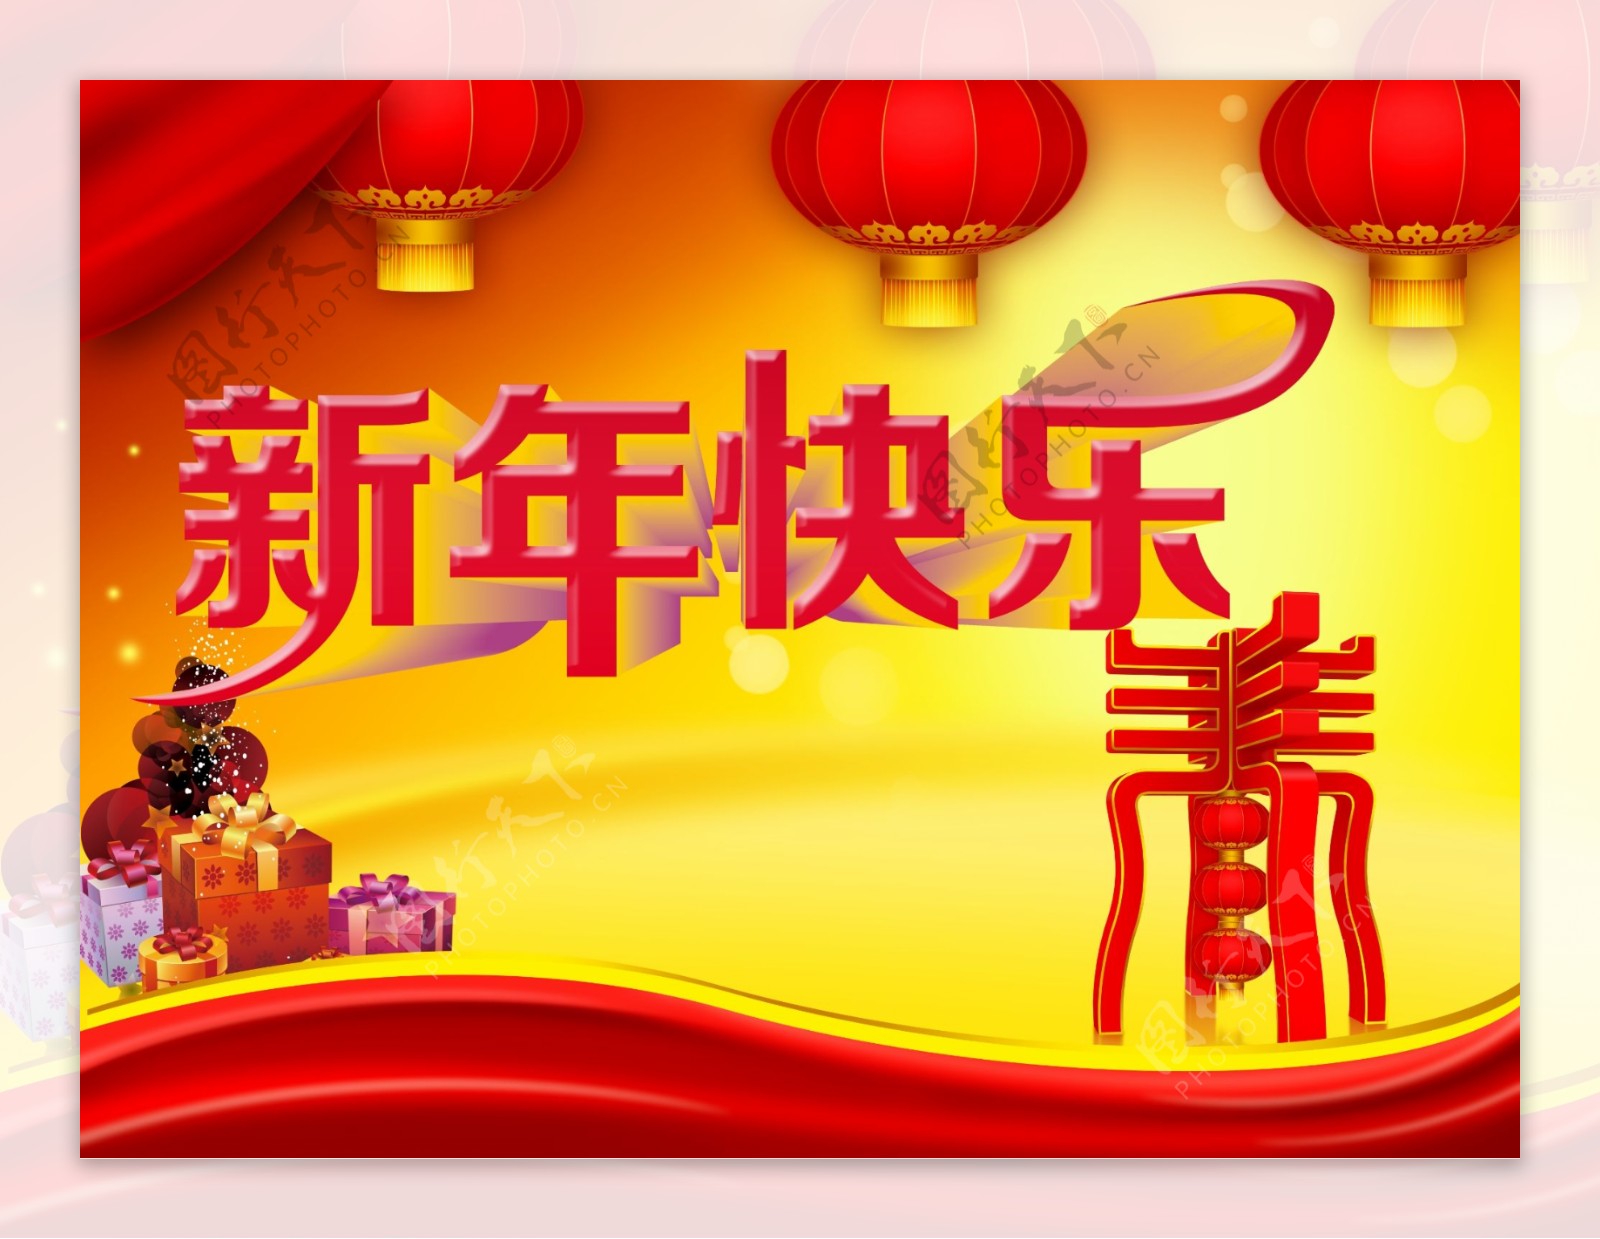 春节新年快乐图片